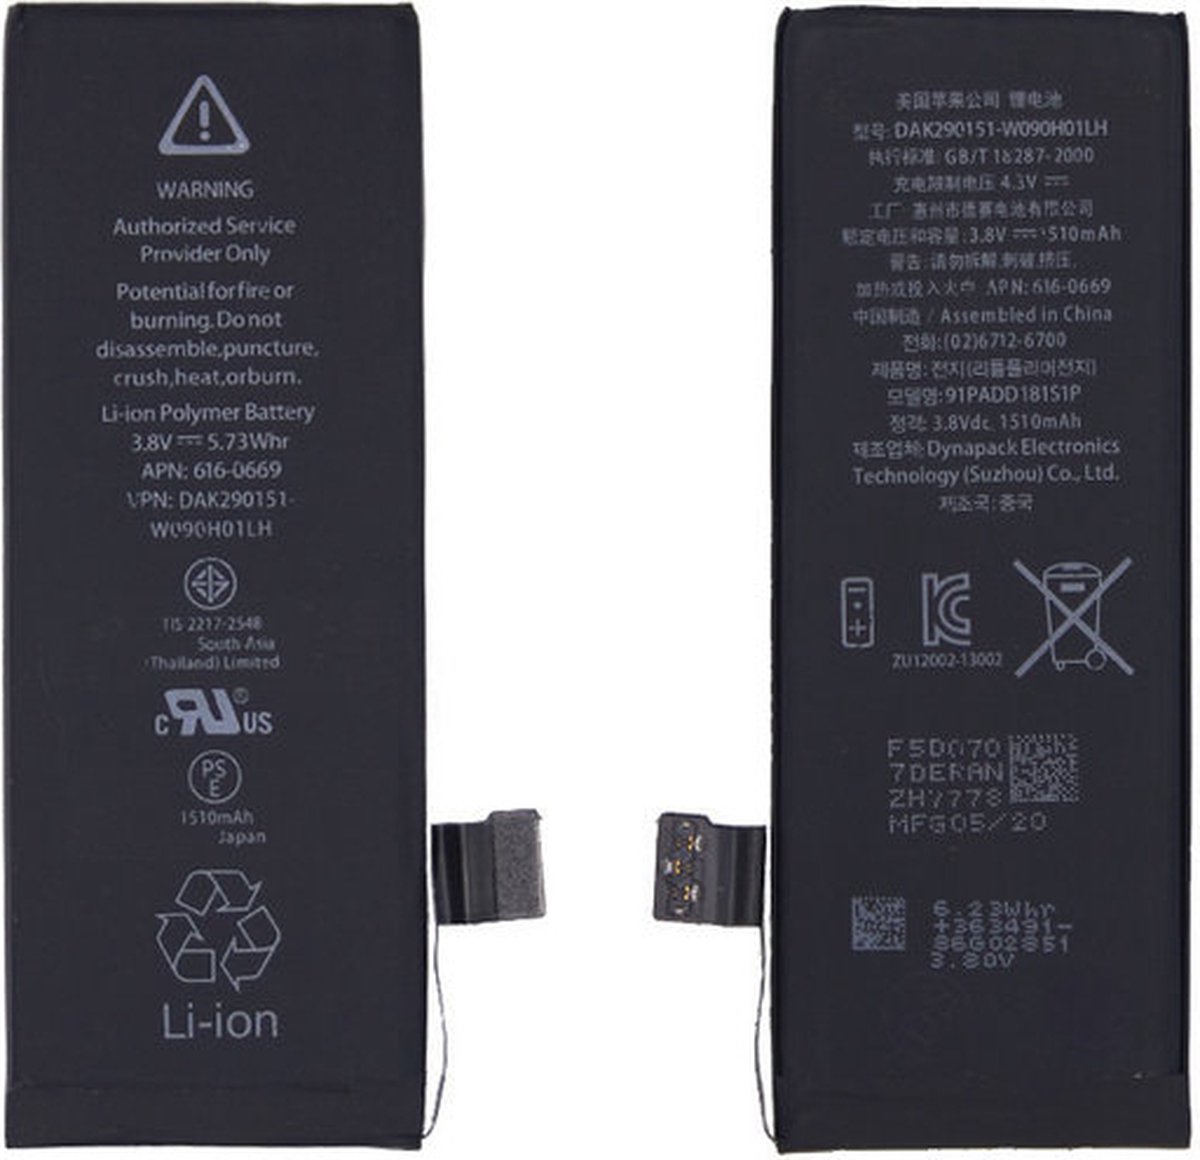 Caasi iPhone 5C Batterij | Batterij sticker | Originele kwaliteit |